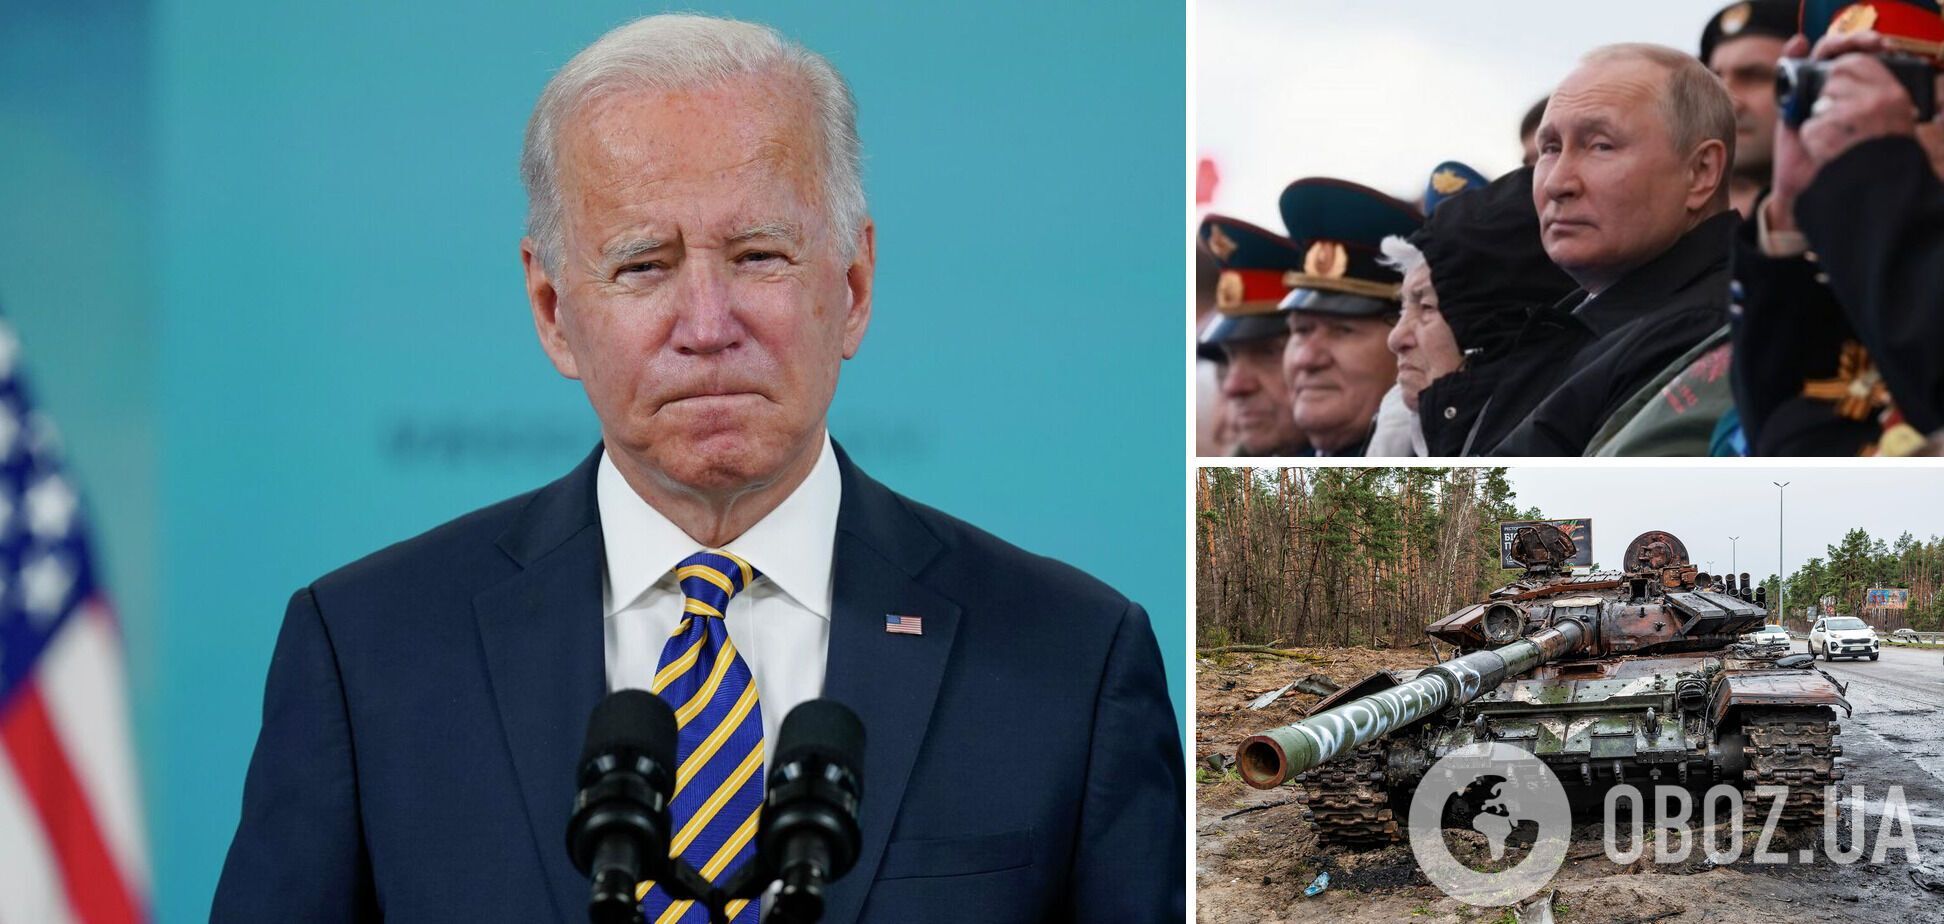 Джо Байден: "Я обеспокоен тем, что у Путина нет выхода из войны в Украине"